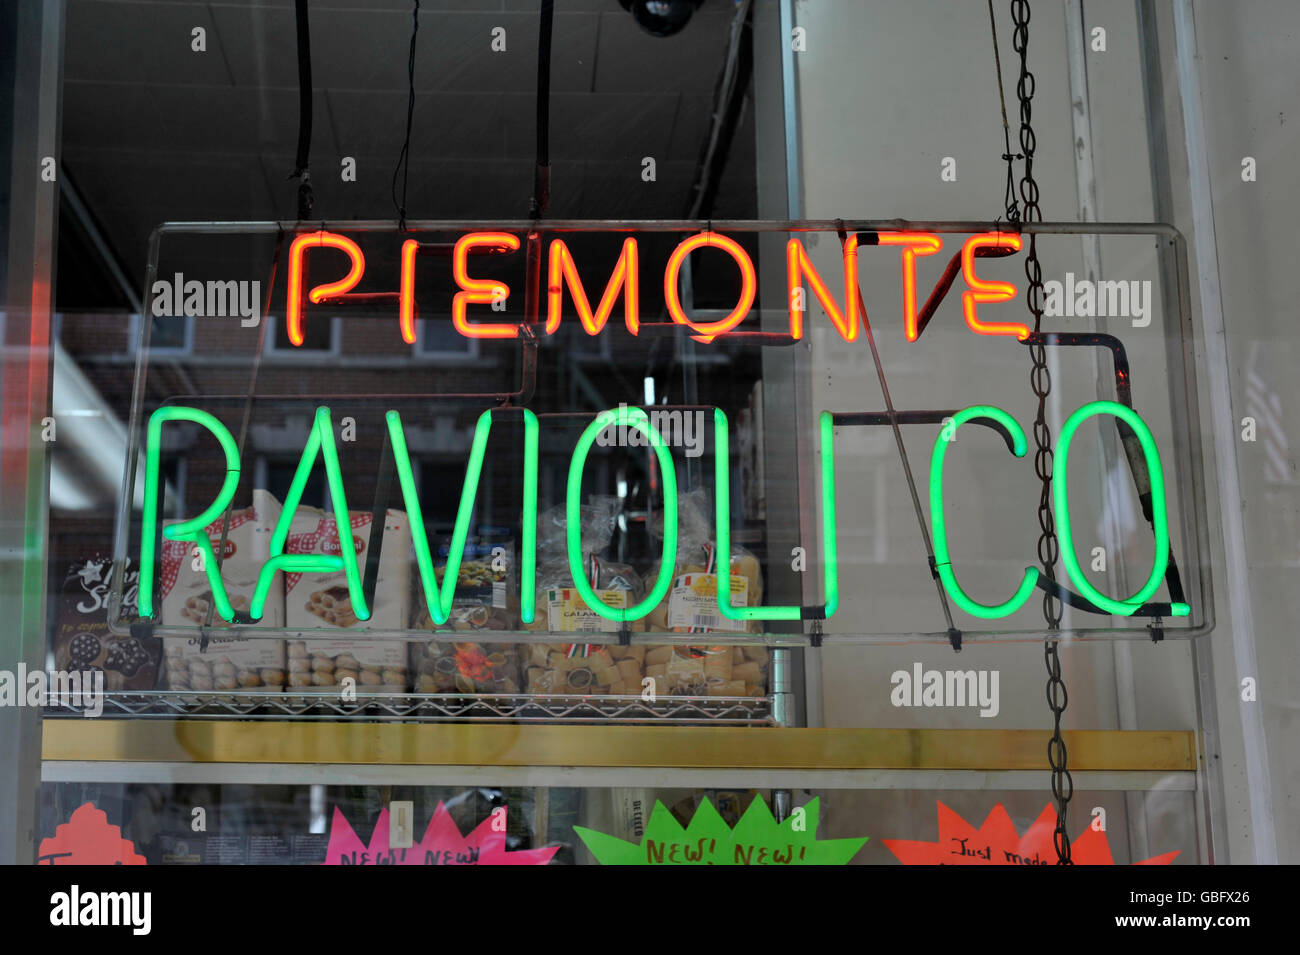 Insegna al neon piemonte ravioli co little italy new york city Foto Stock